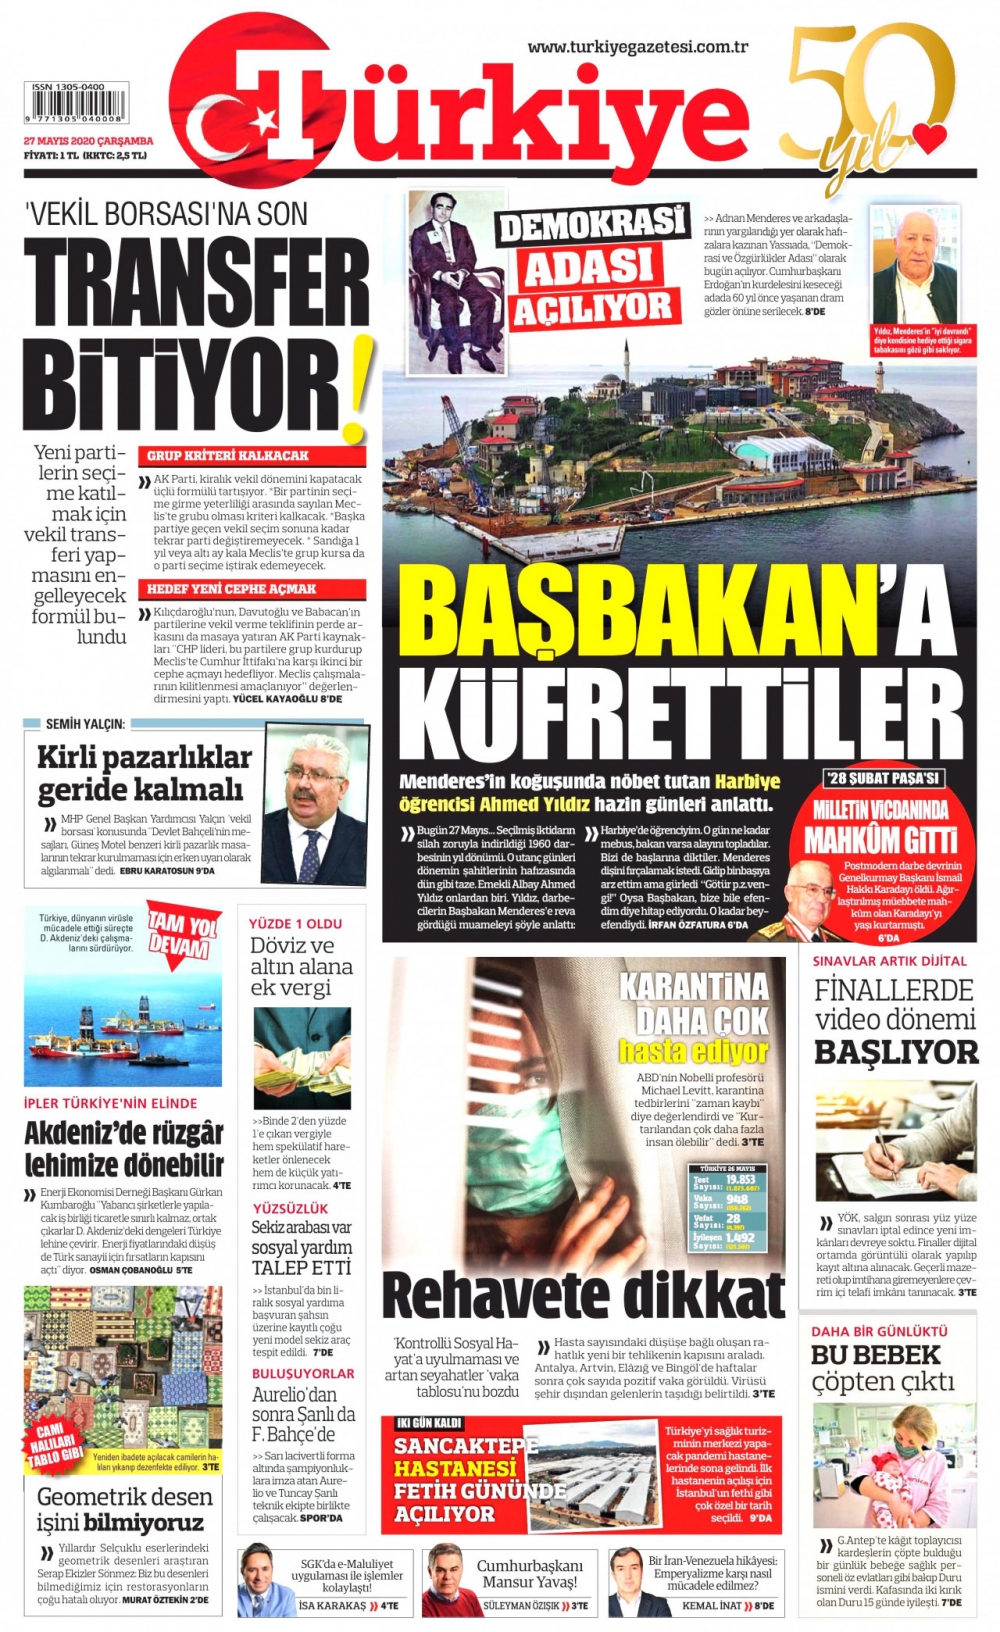 Gazeteler bugün ne yazdı? 27 Mayıs Gazete Manşetleri 2